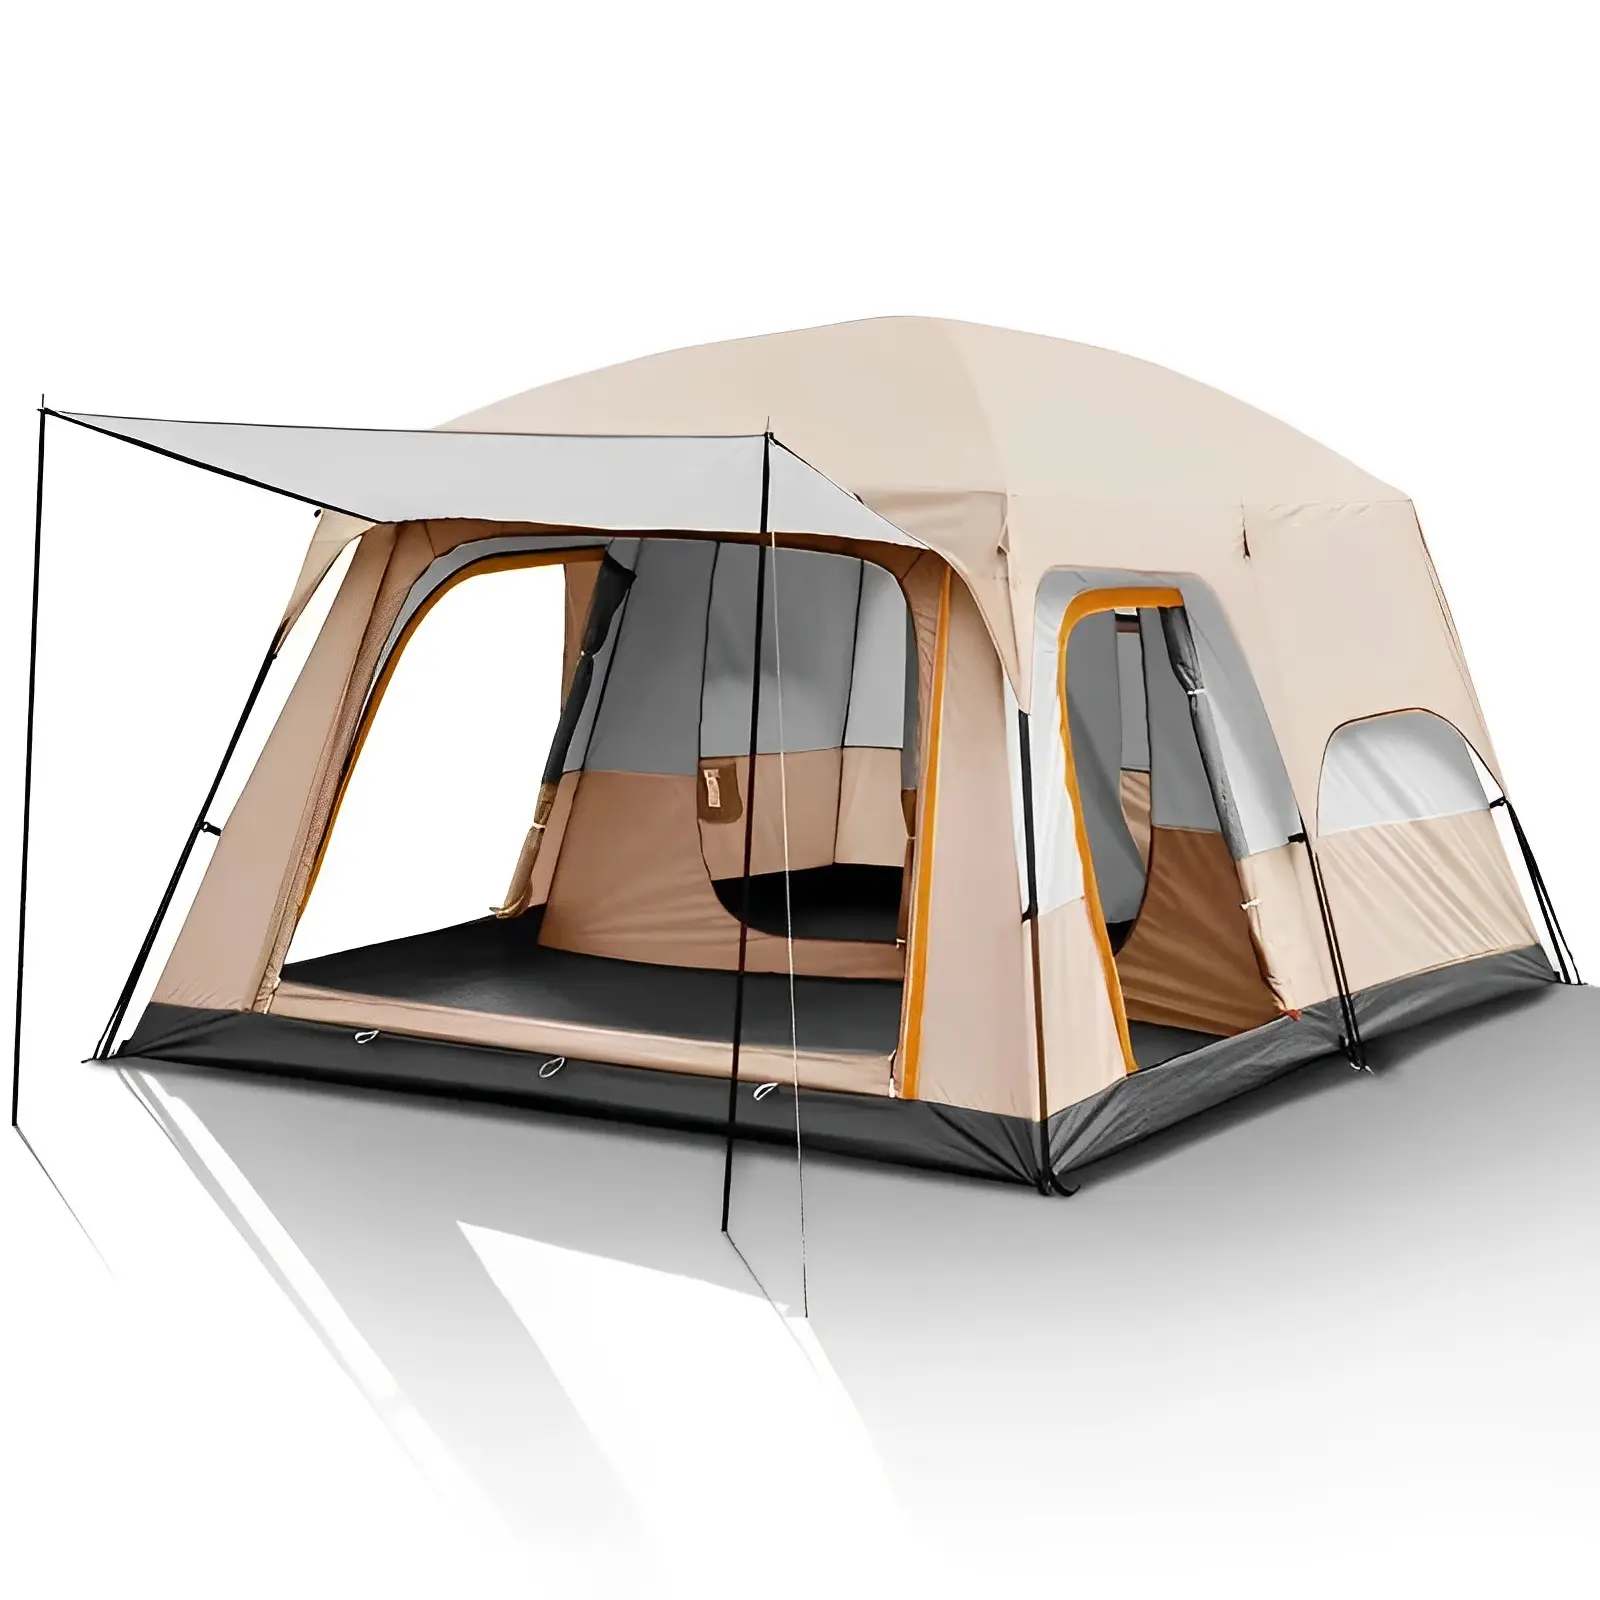 Grande portátil dois quartos e um salão camping ao ar livre impermeável família camping tendas